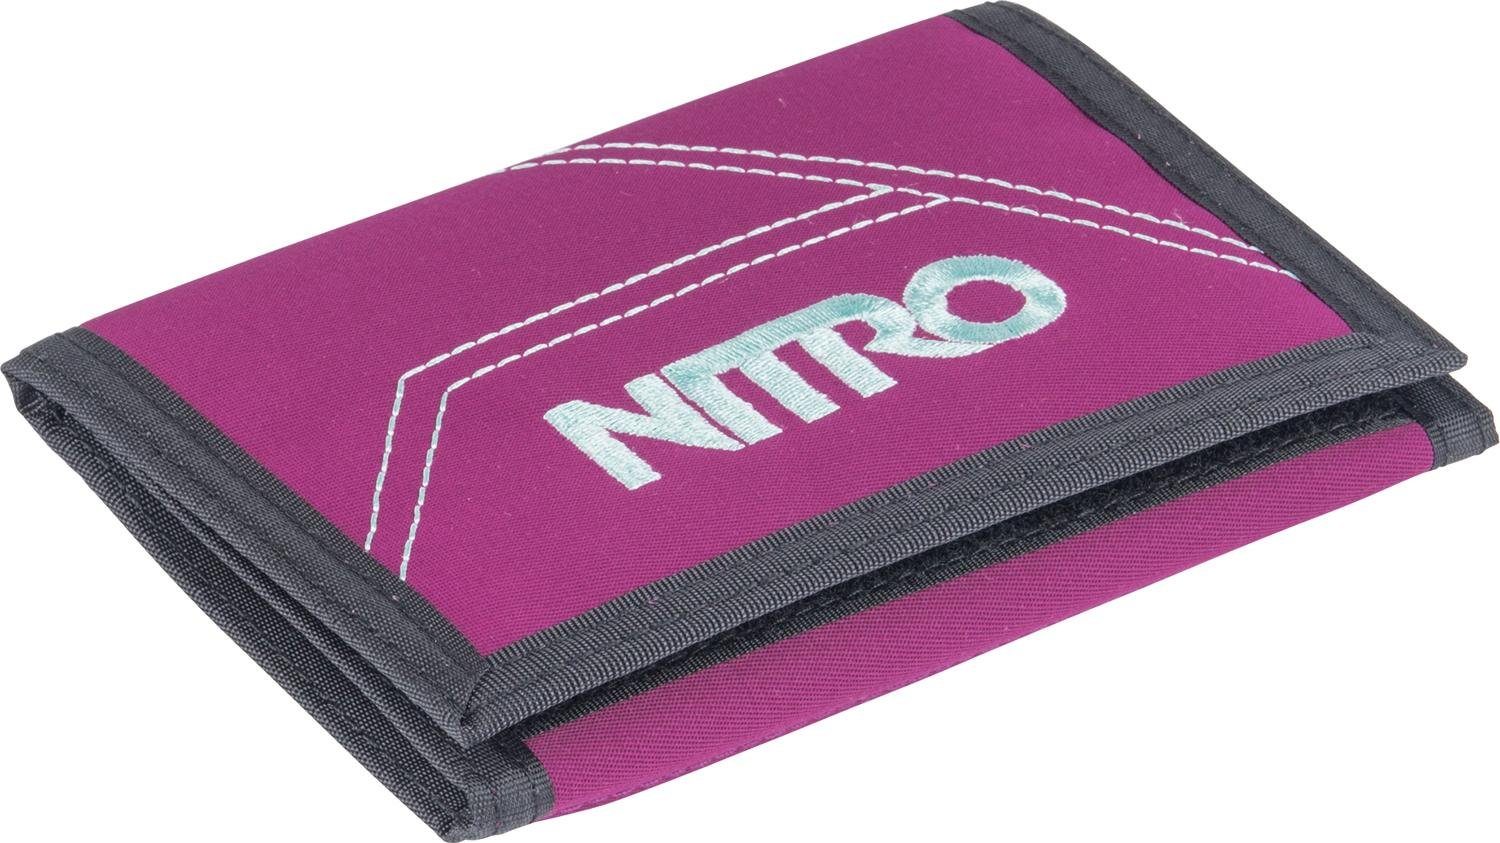 NITRO Geldbörse Wallet, Grateful Pink | Geldbörsen